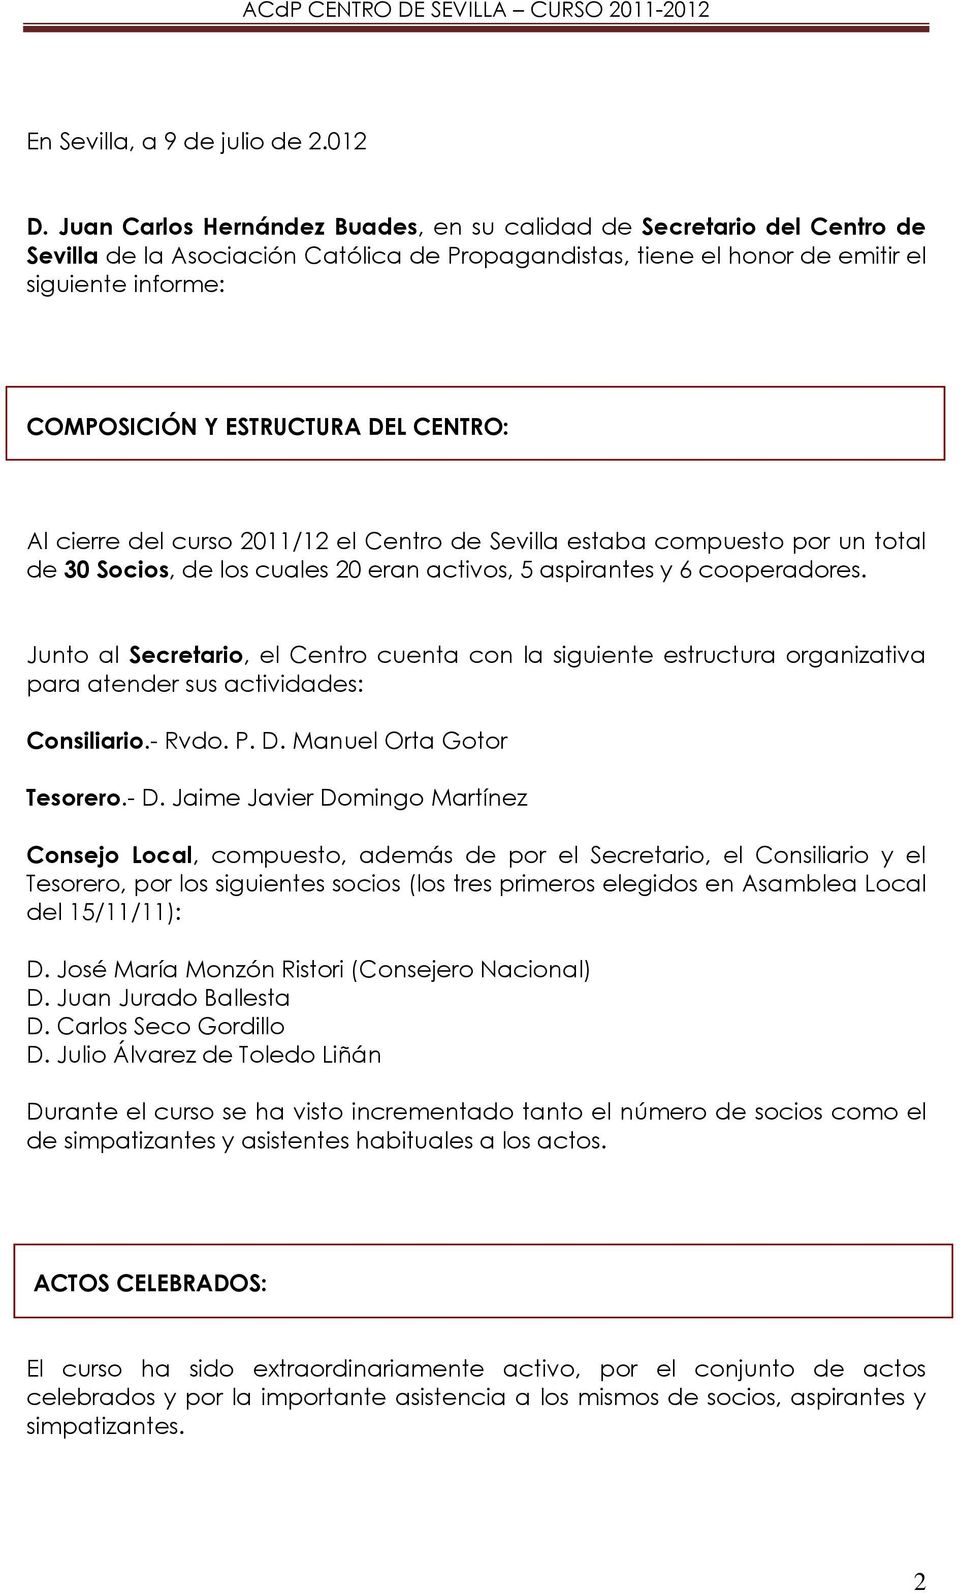 DEL CENTRO: Al cierre del curso 2011/12 el Centro de Sevilla estaba compuesto por un total de 30 Socios, de los cuales 20 eran activos, 5 aspirantes y 6 cooperadores.